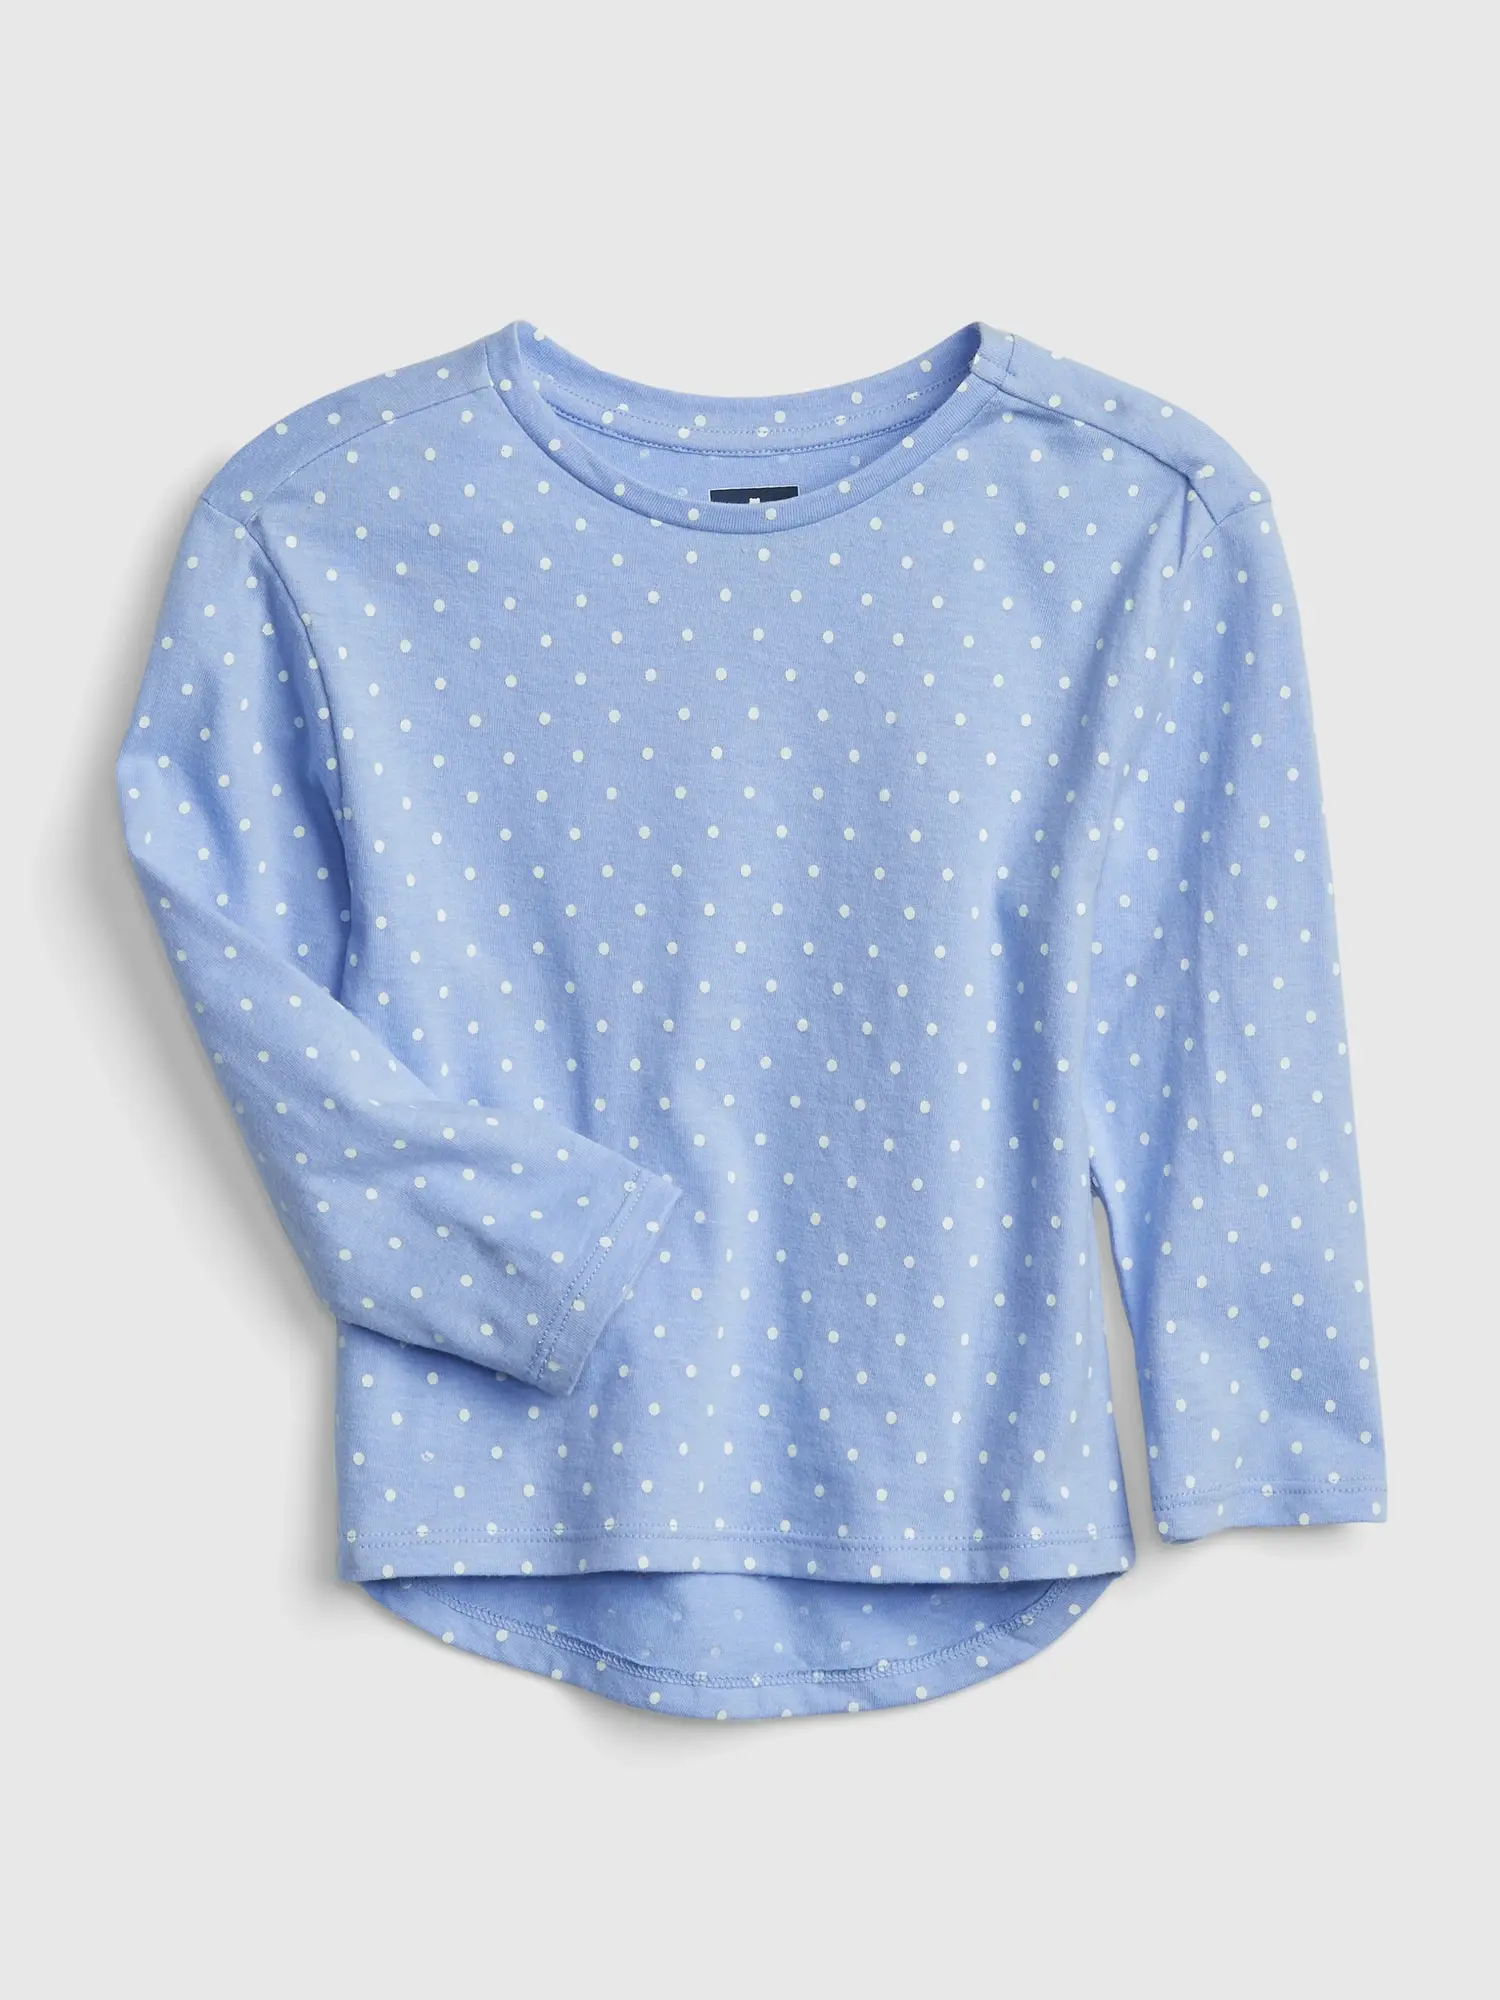 Gap Toddler 100% Organic Cotton Mix and Match Print Tunic Top blue. 1